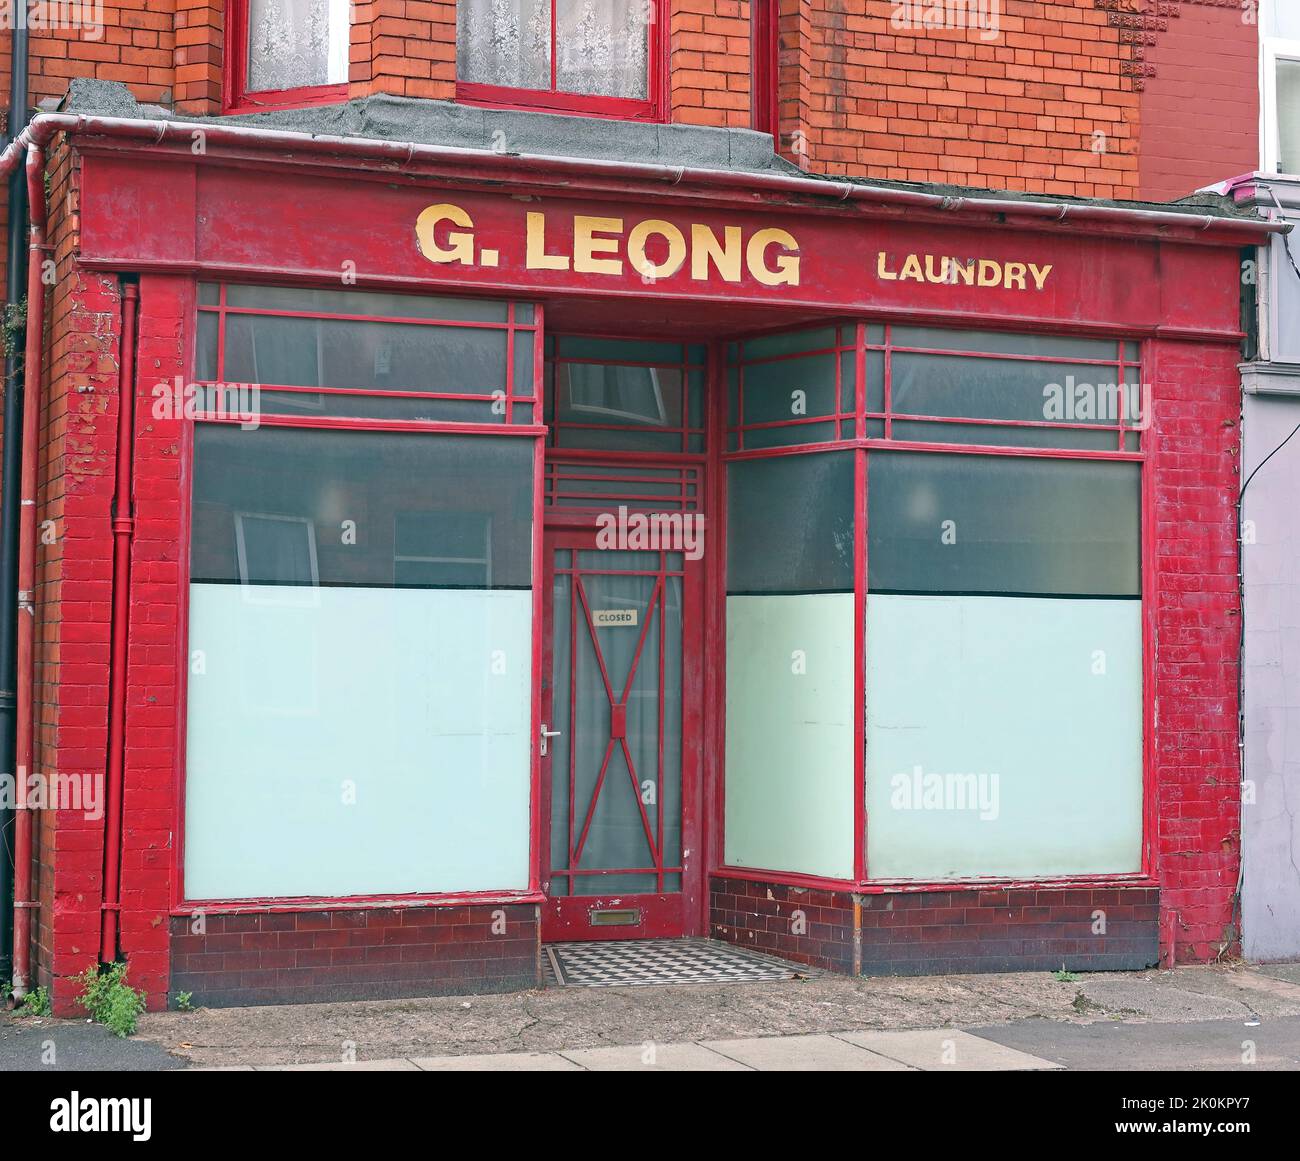 Chinesische Wäscherei, G.Leong, 117 Penny Lane, Liverpool, Merseyside, England, Großbritannien, L18 - anscheinend verfolgt Stockfoto